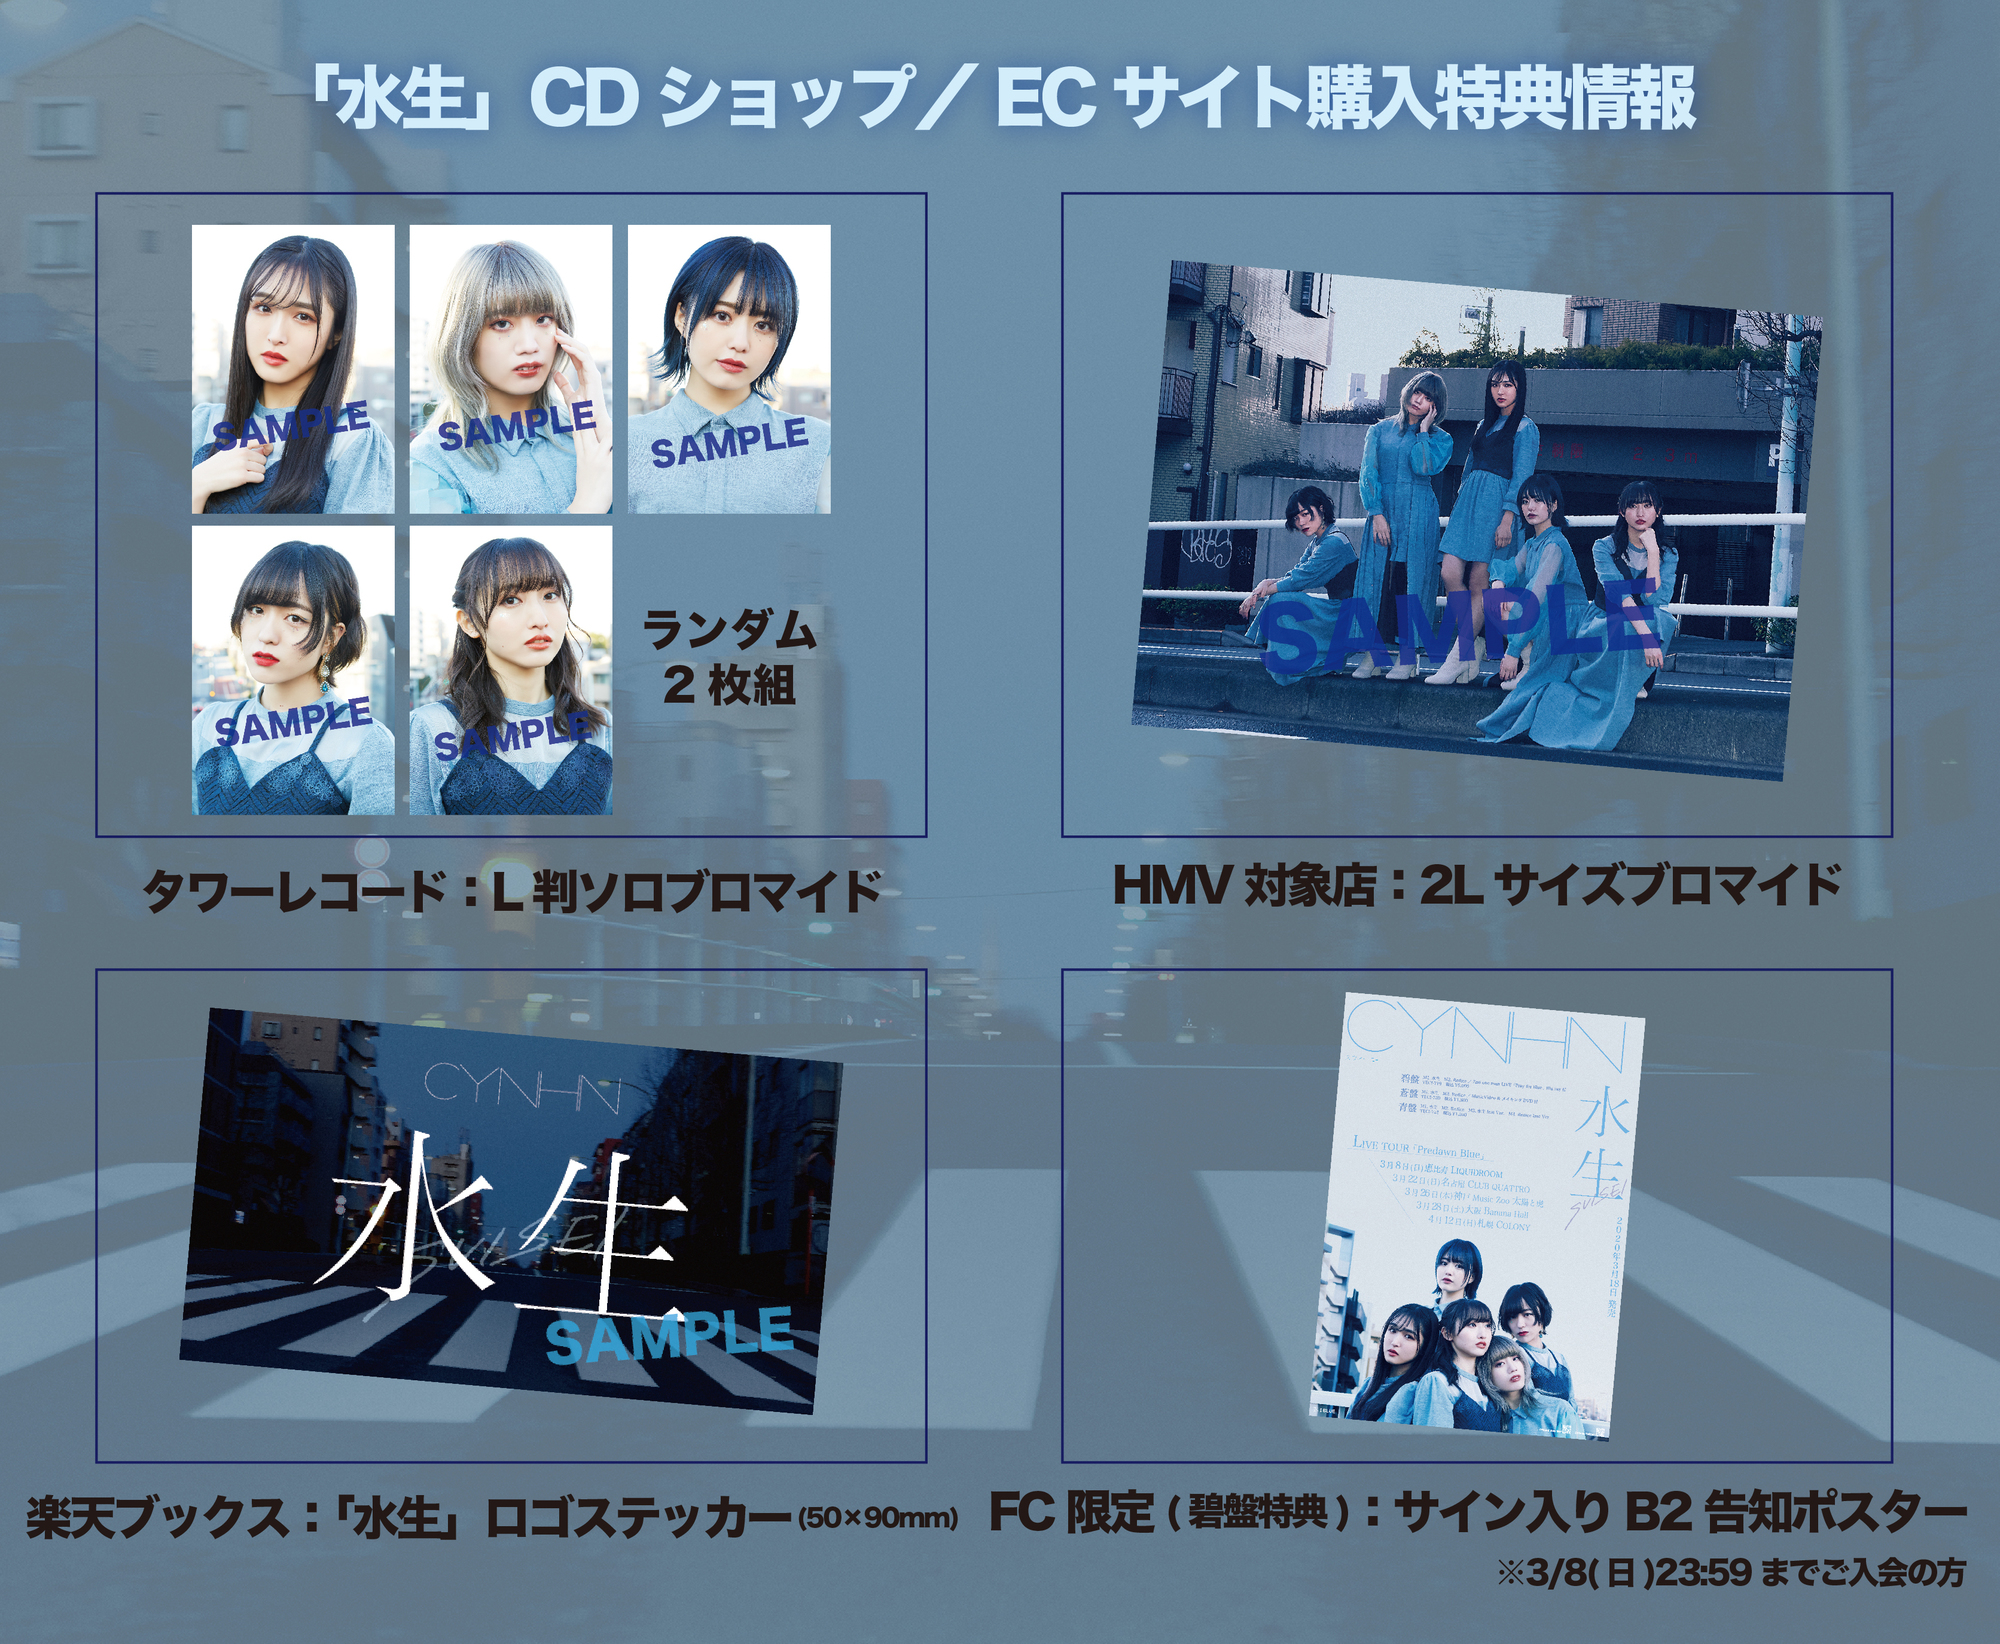 7thシングル『水生』CDショップ/ECサイト購入特典情報[3/18更新] | CYNHN Official Web Site